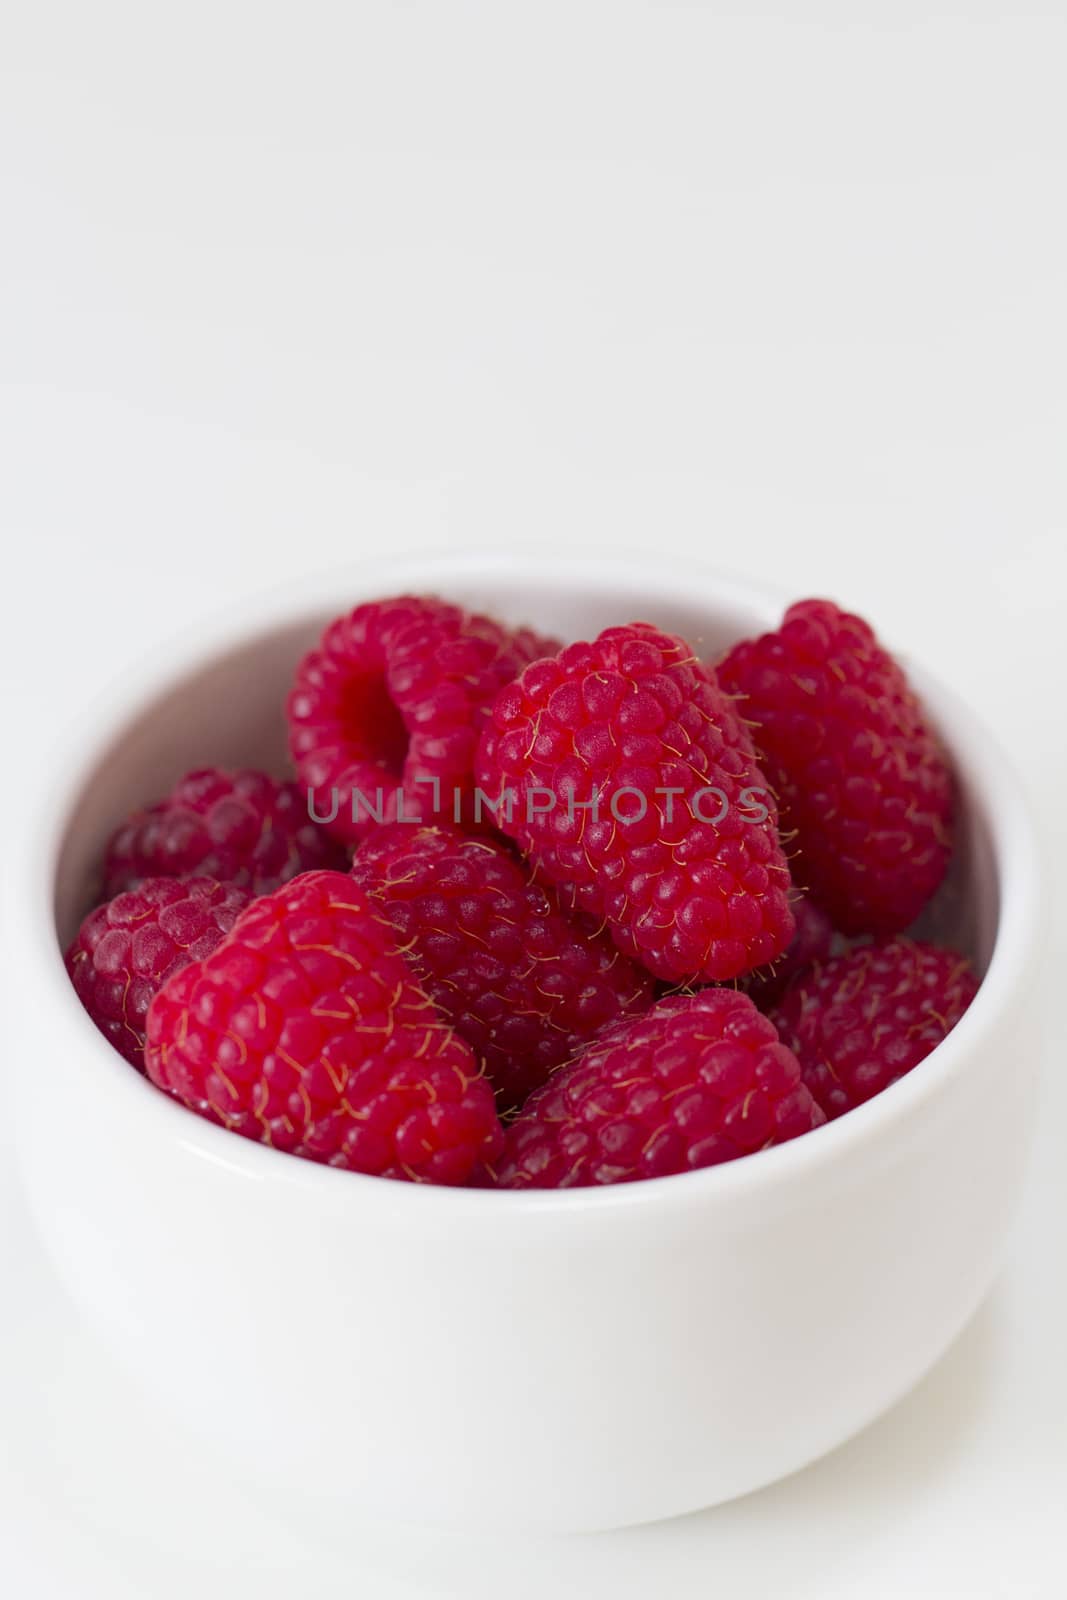 A Bowl of Raspberries by magicbones